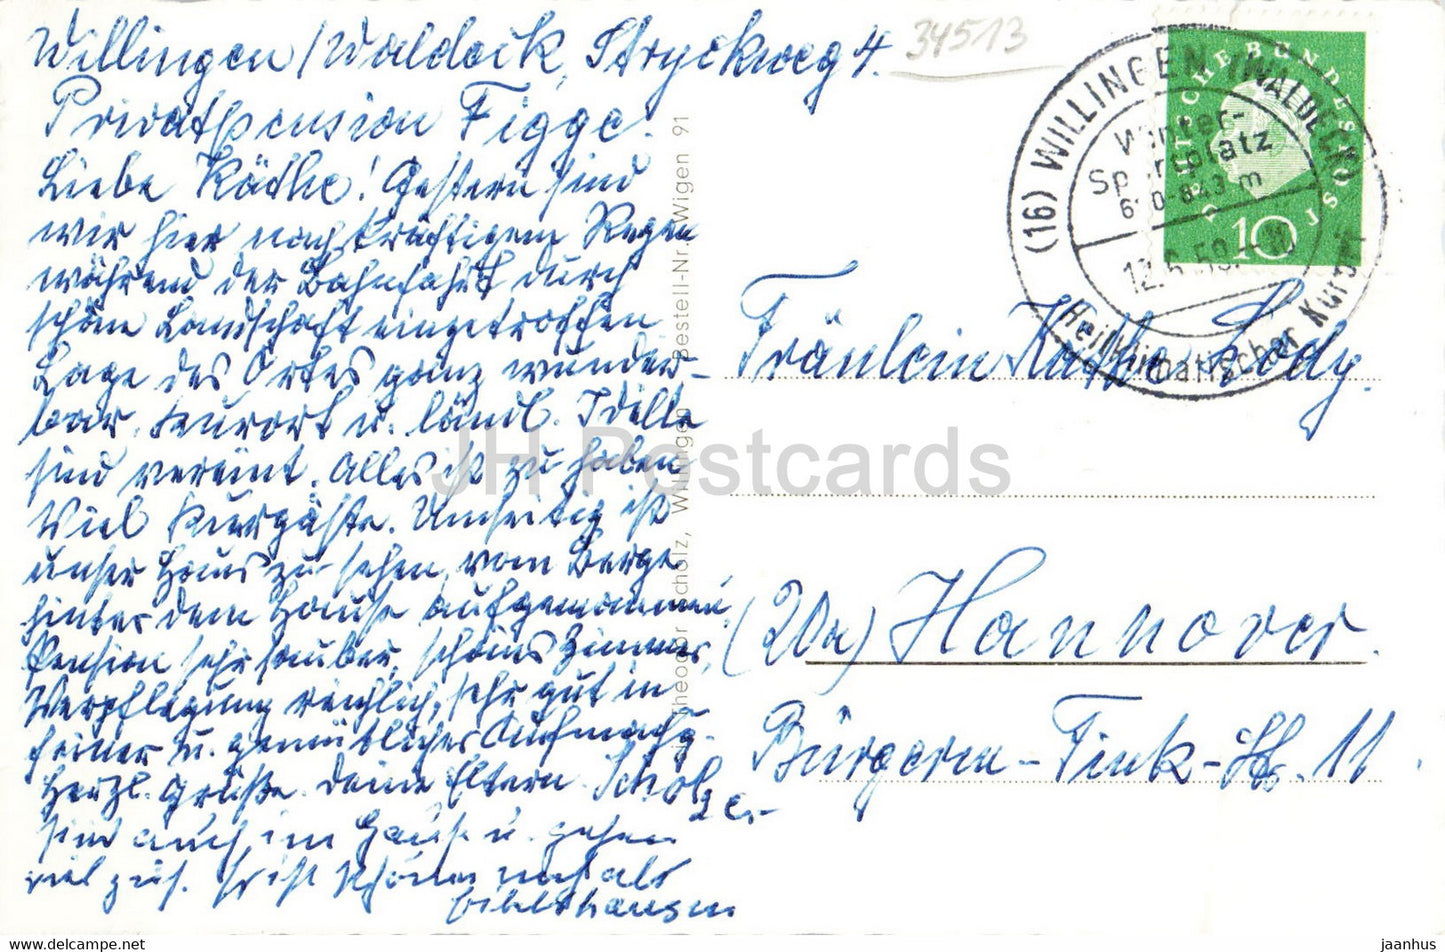 Willingen - Viadukt - old postcard - 1959 - Germany - used